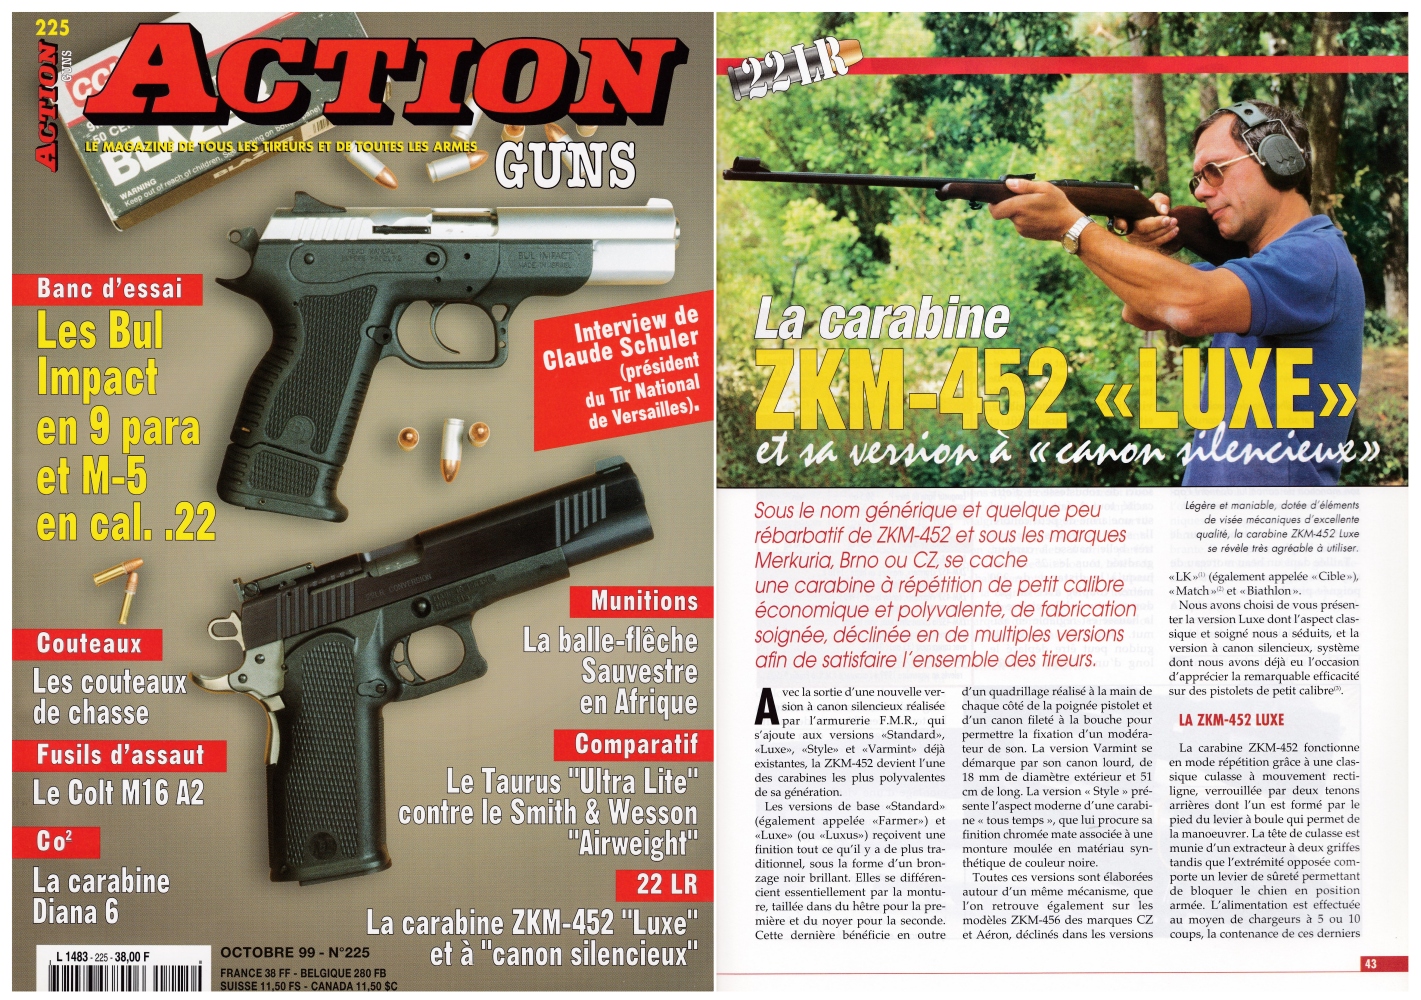 Le banc d’essai des carabines CZ ZKM-452 « Luxe » et à canon silencieux a été publié sur 5 pages dans le magazine Action Guns n°225 (octobre 1999) 